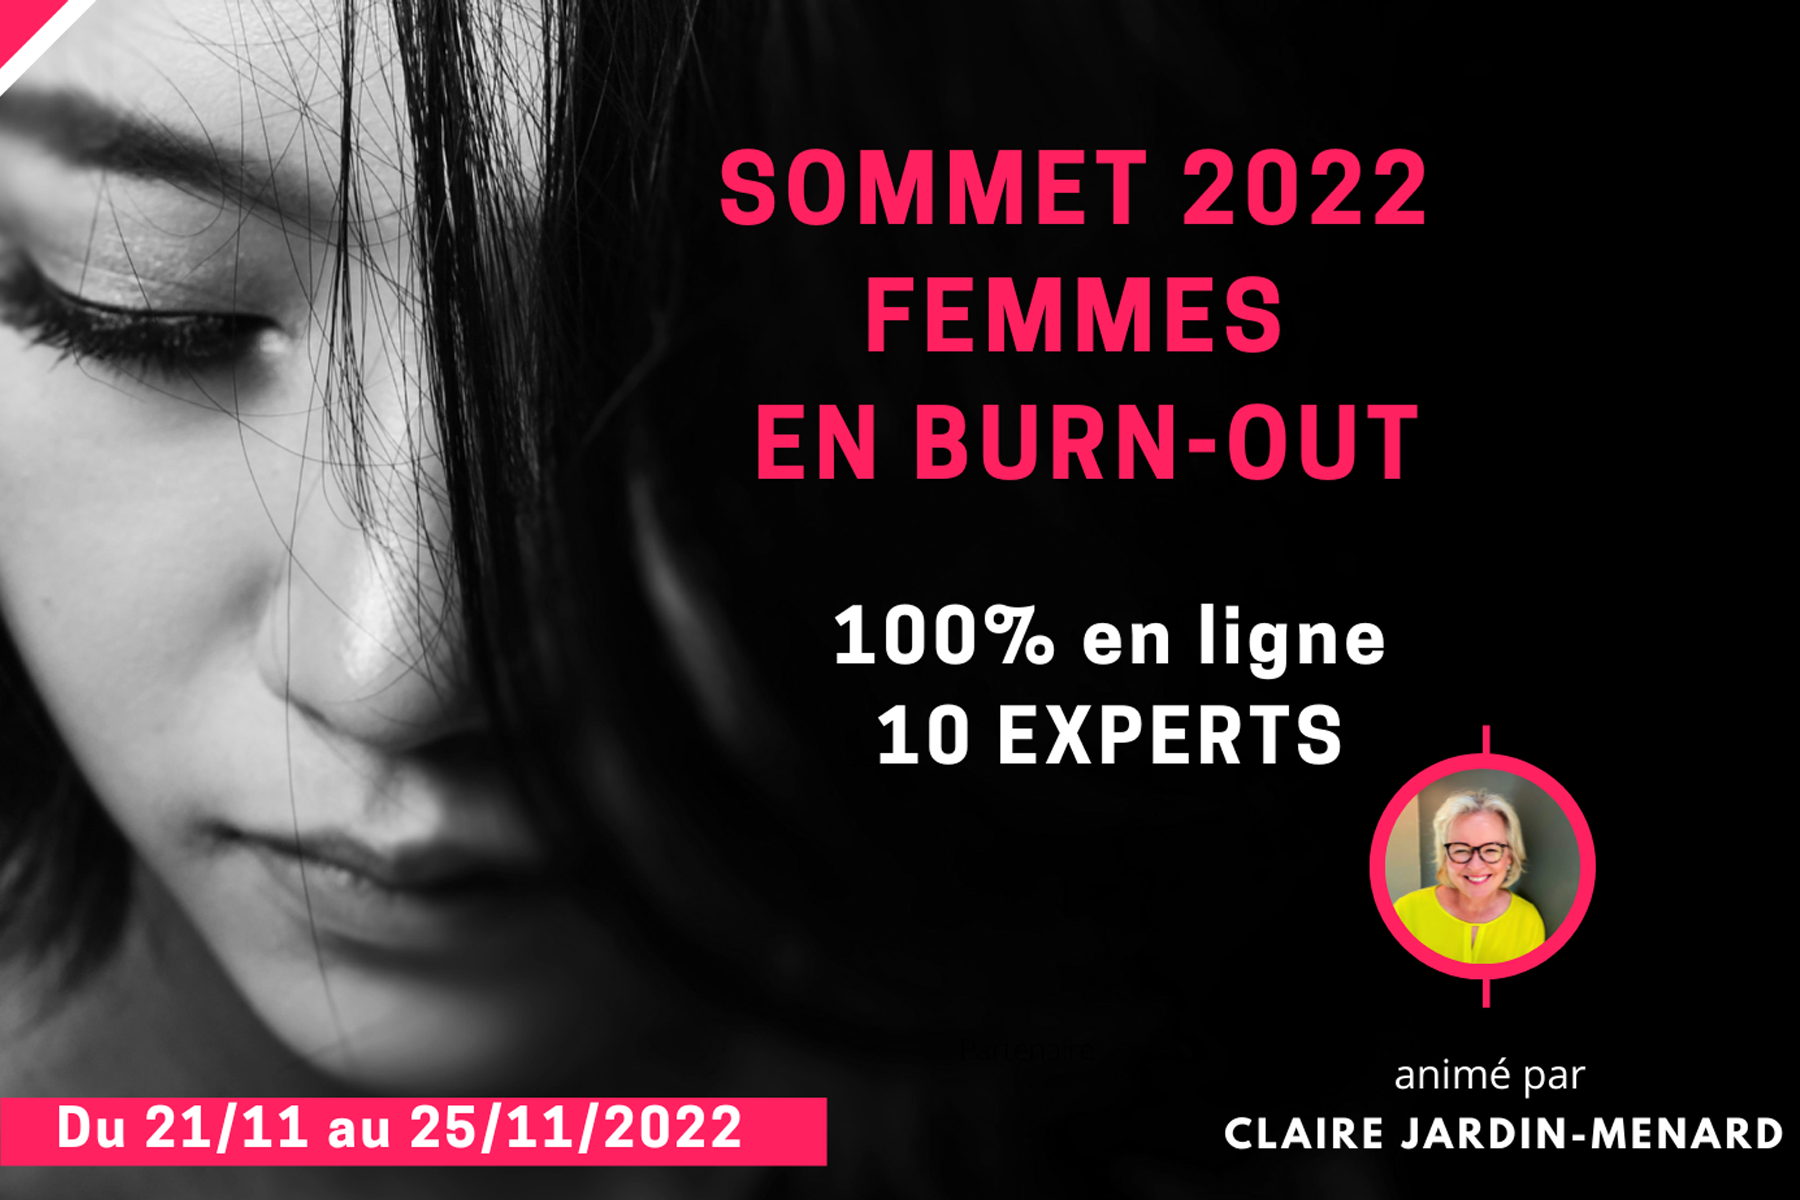 Femmes en burn-out - Sommet 2022